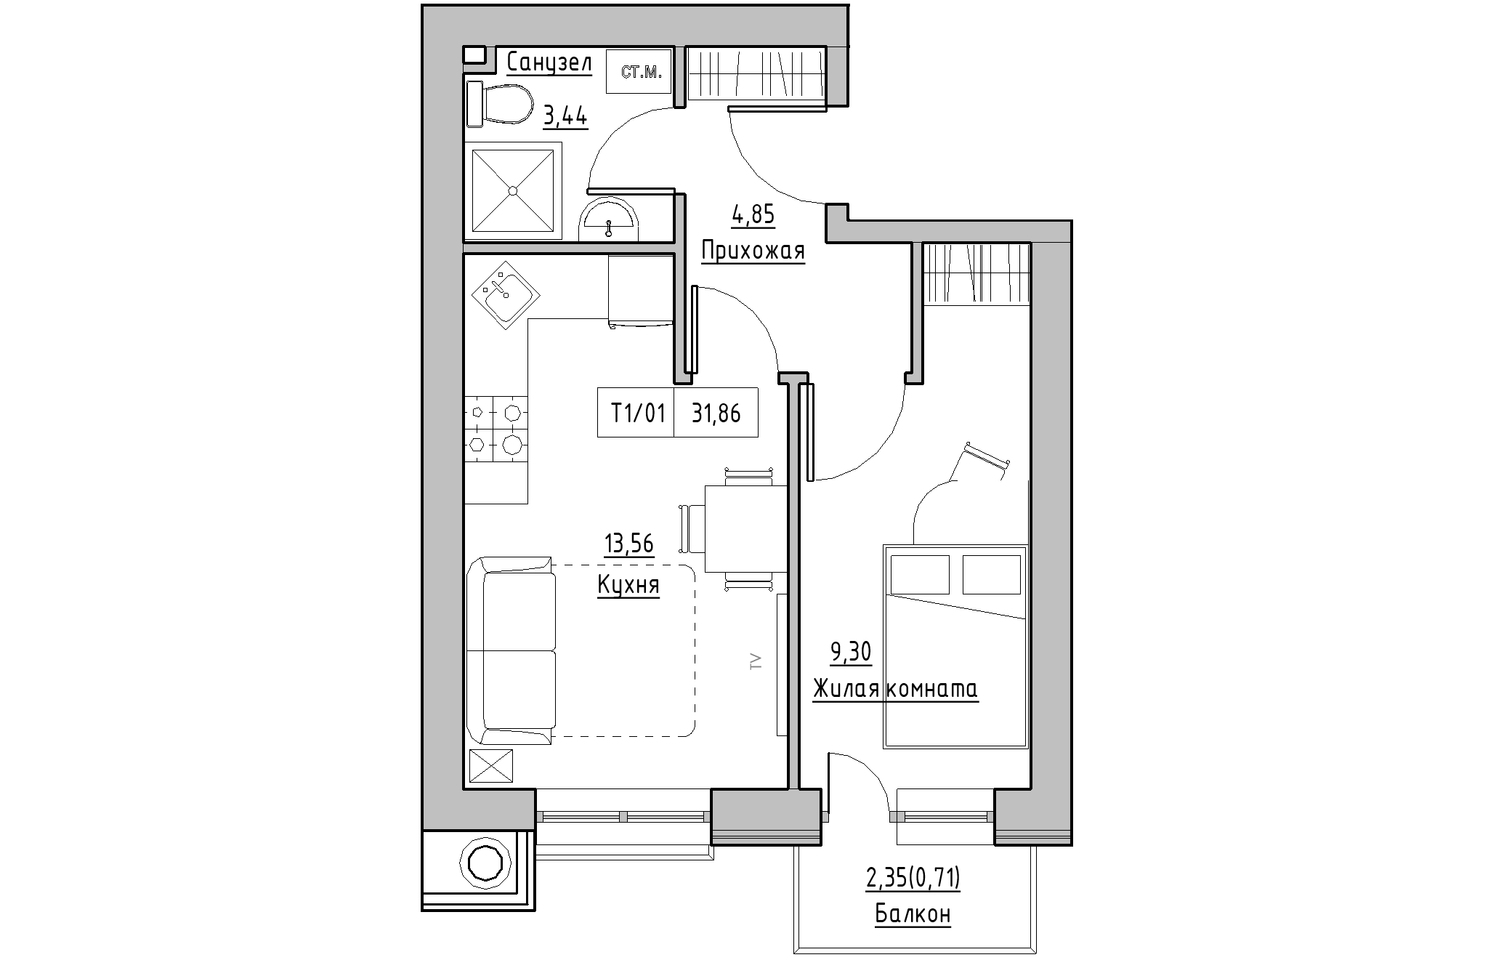 Планування 1-к квартира площею 31.86м2, KS-010-05/0003.